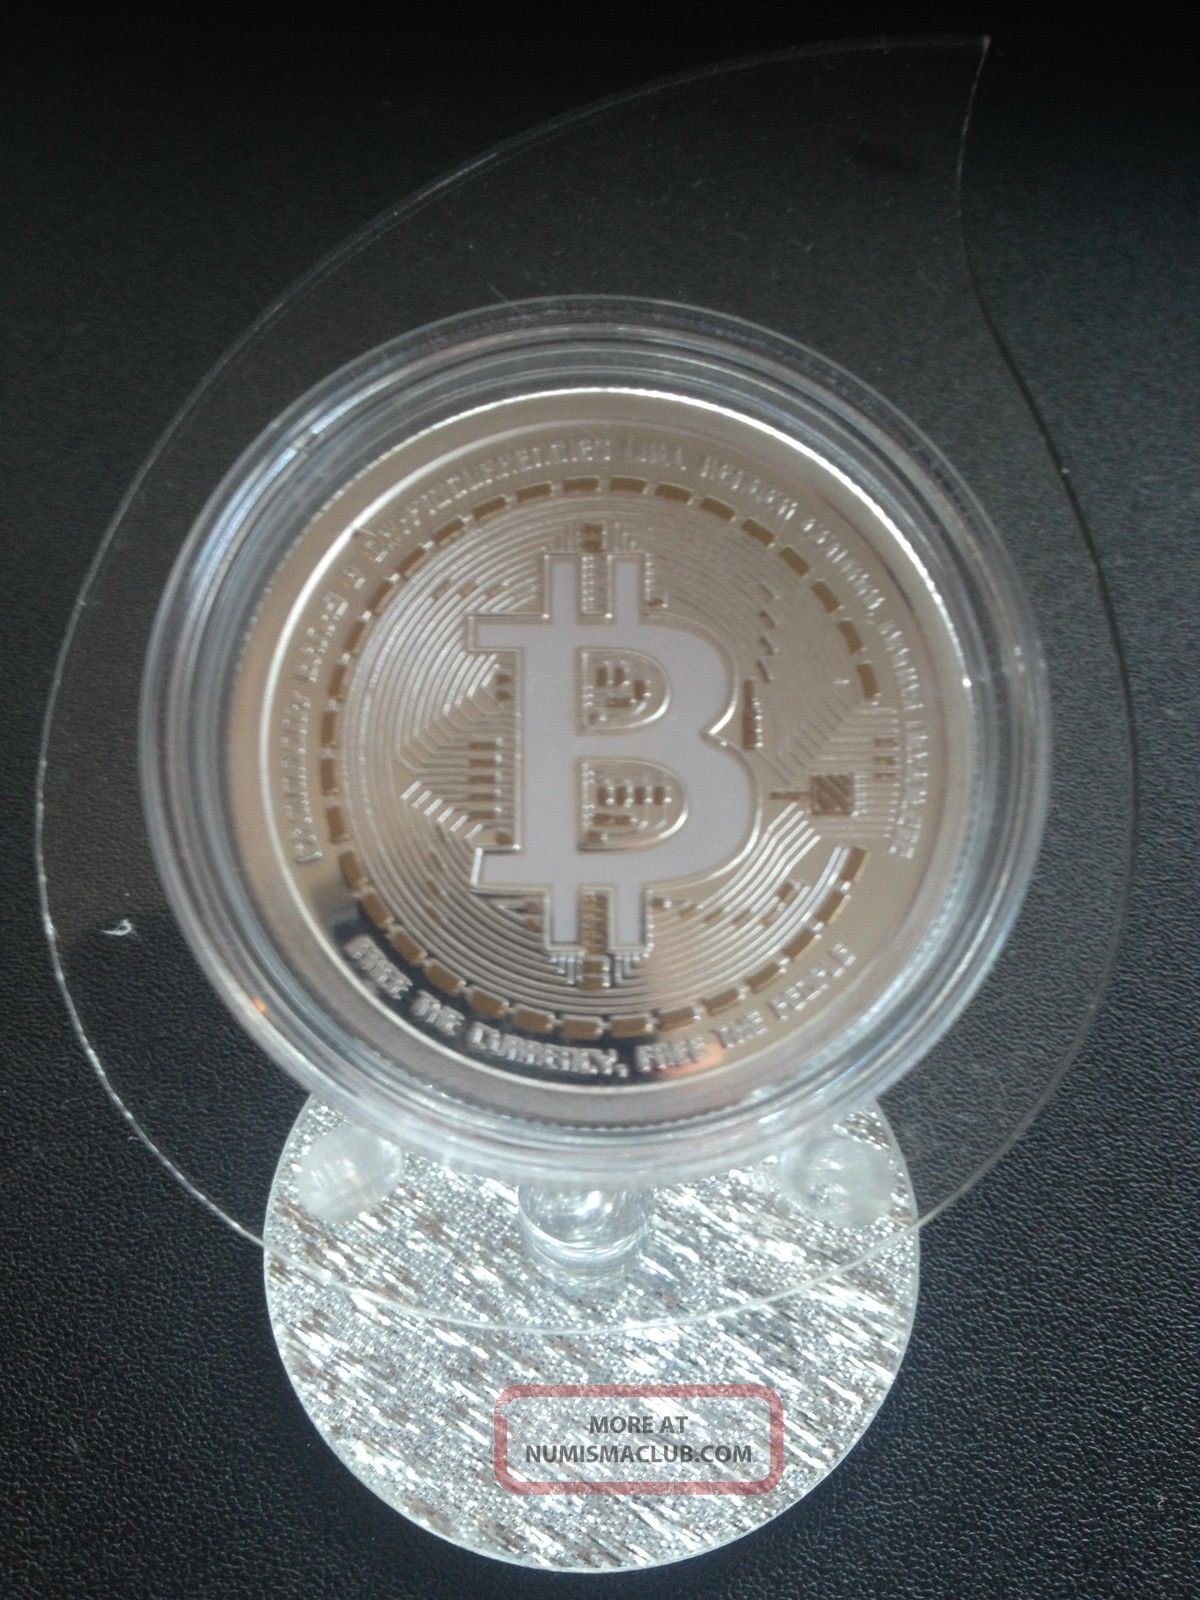 1 oz silver commemorative bitcoin from osborne mint